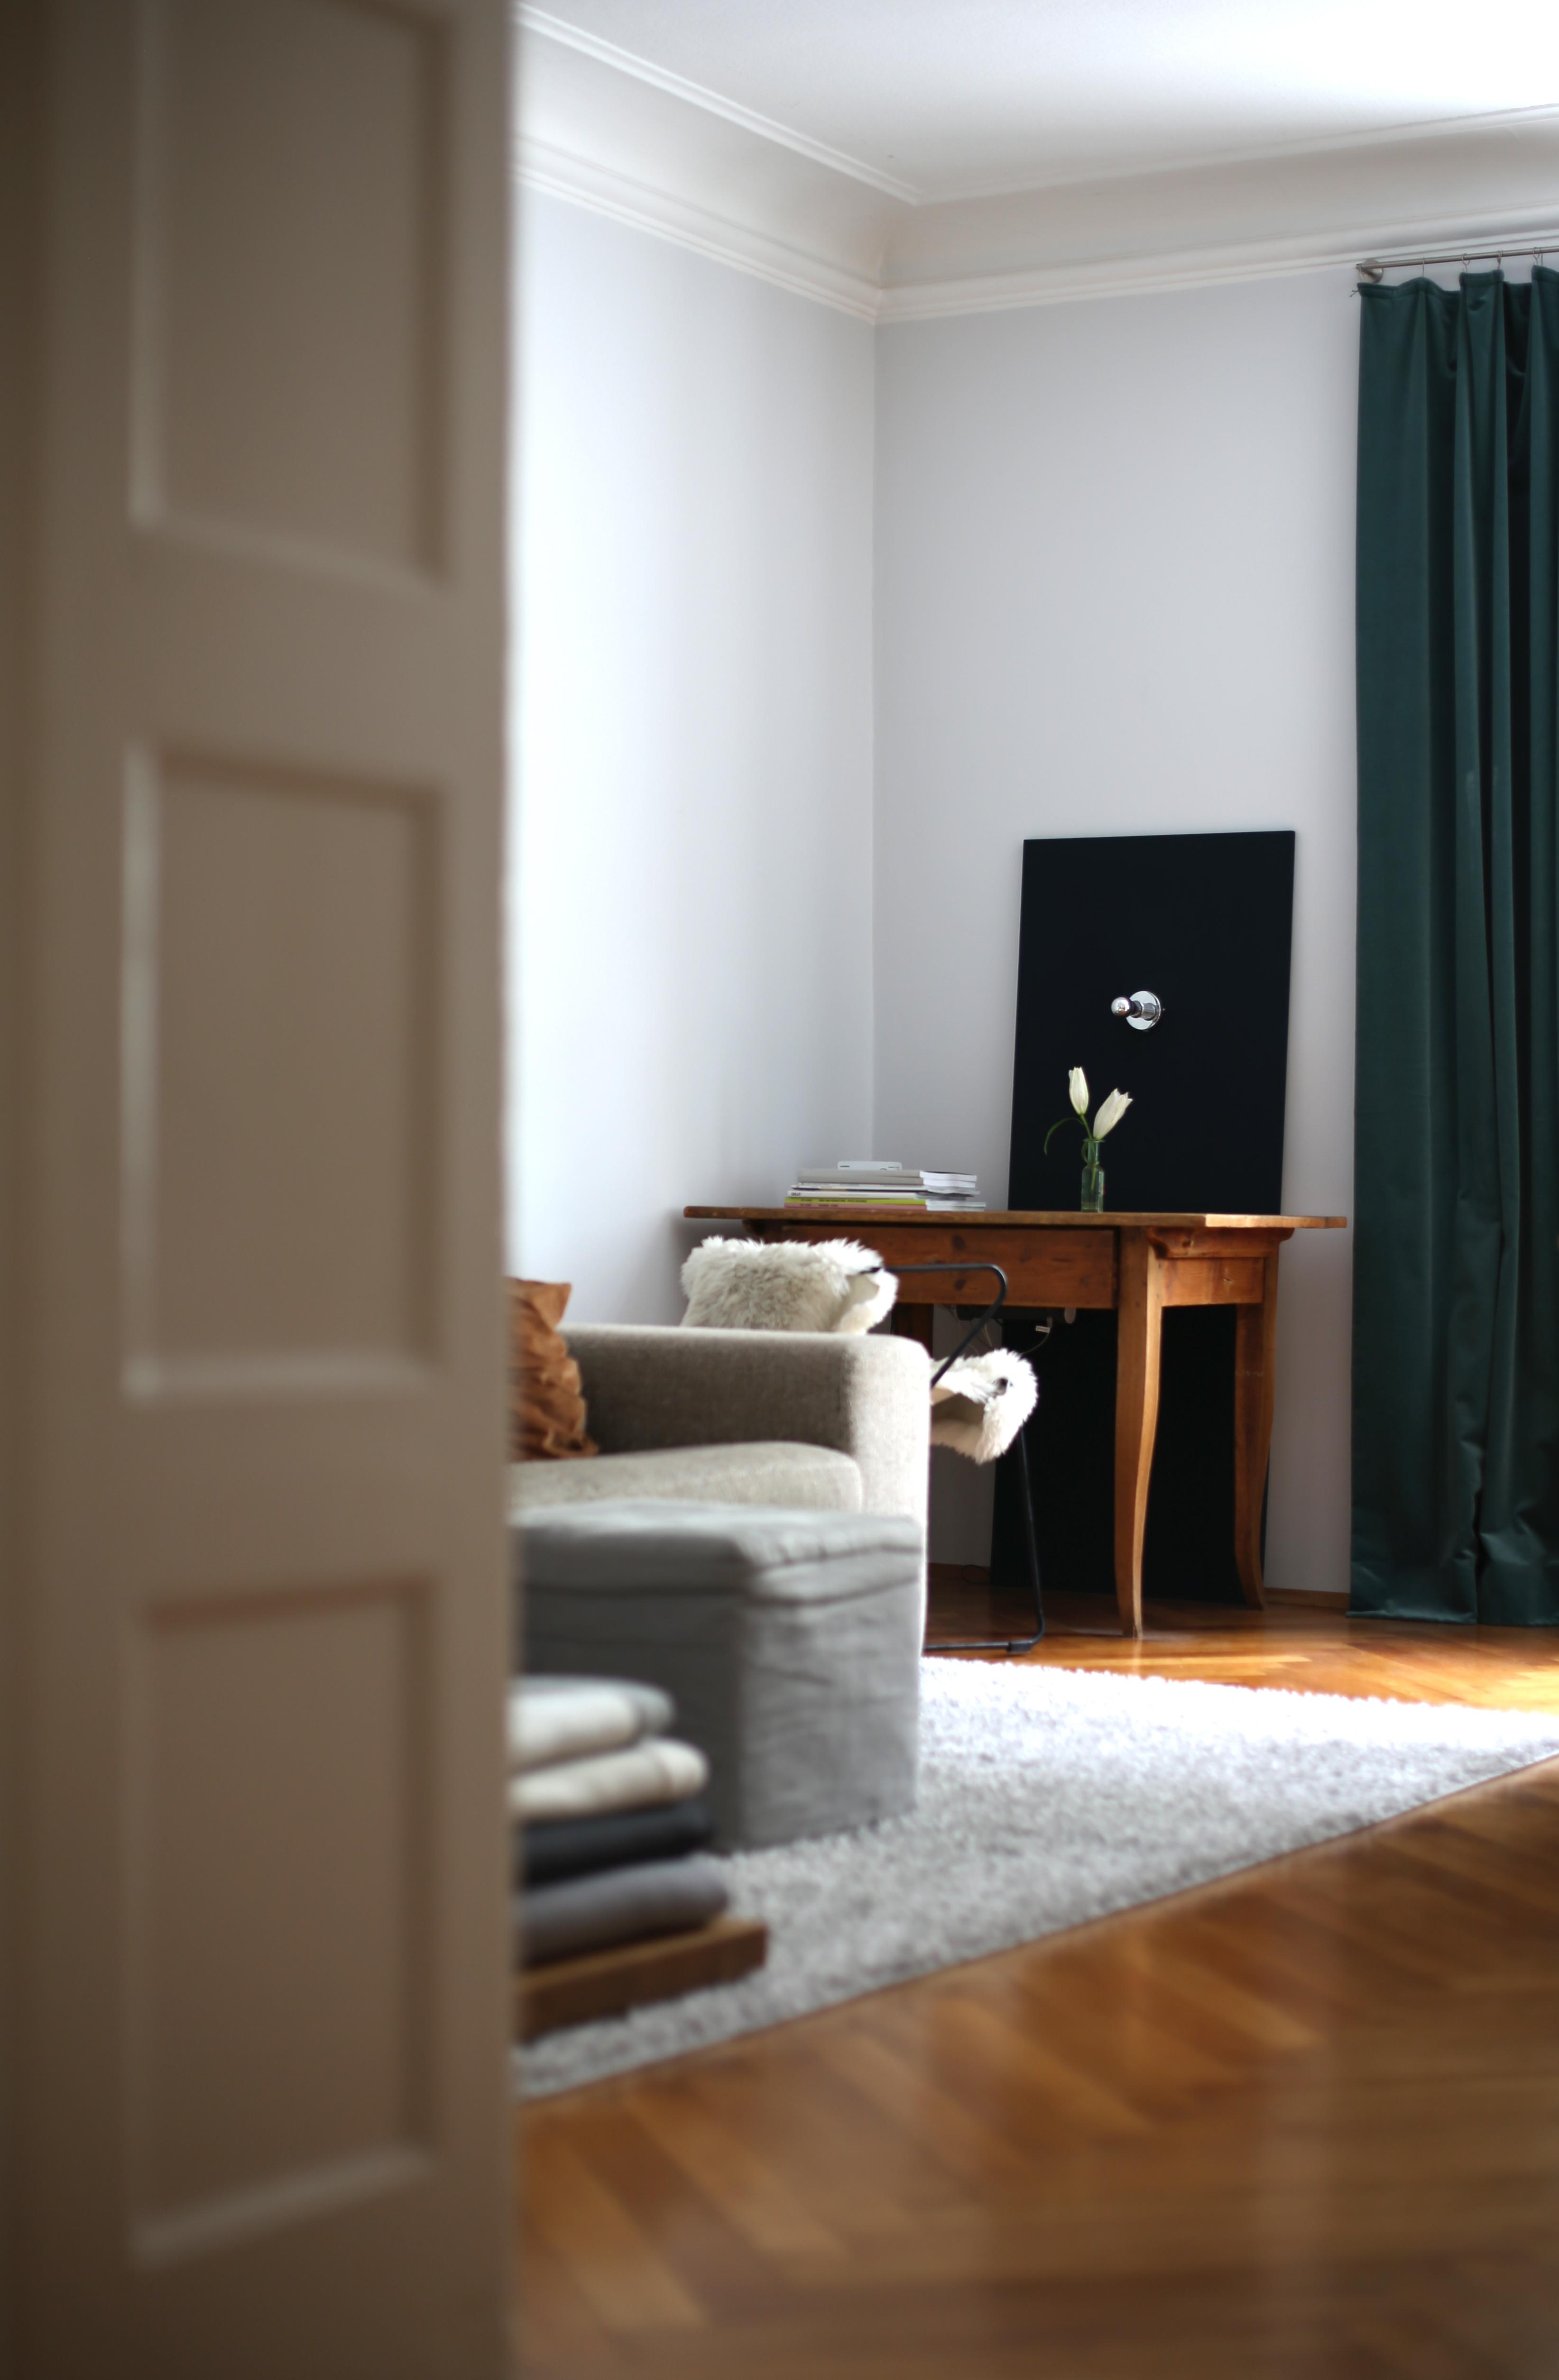 wenn es mal wieder ruhiger ist! #wohnzimmer #altbau #altbauliebe #sofa #vintage #interior #couchliebt #couchstyle